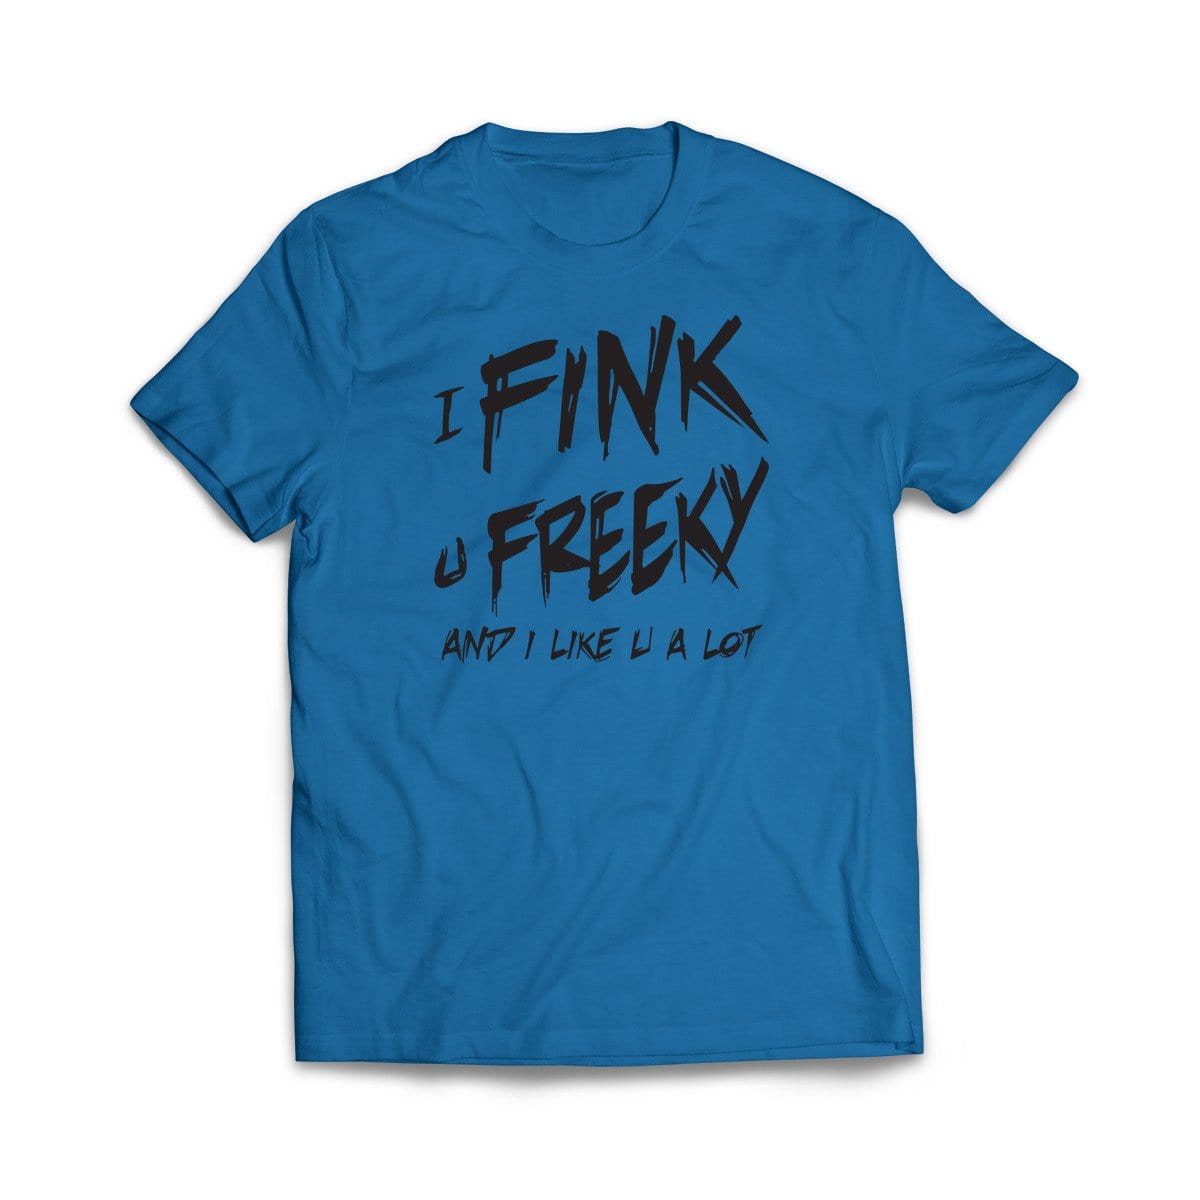 I Fink U Freeky I Like You A Lot Tank Top - YM6-BL048 Explicit